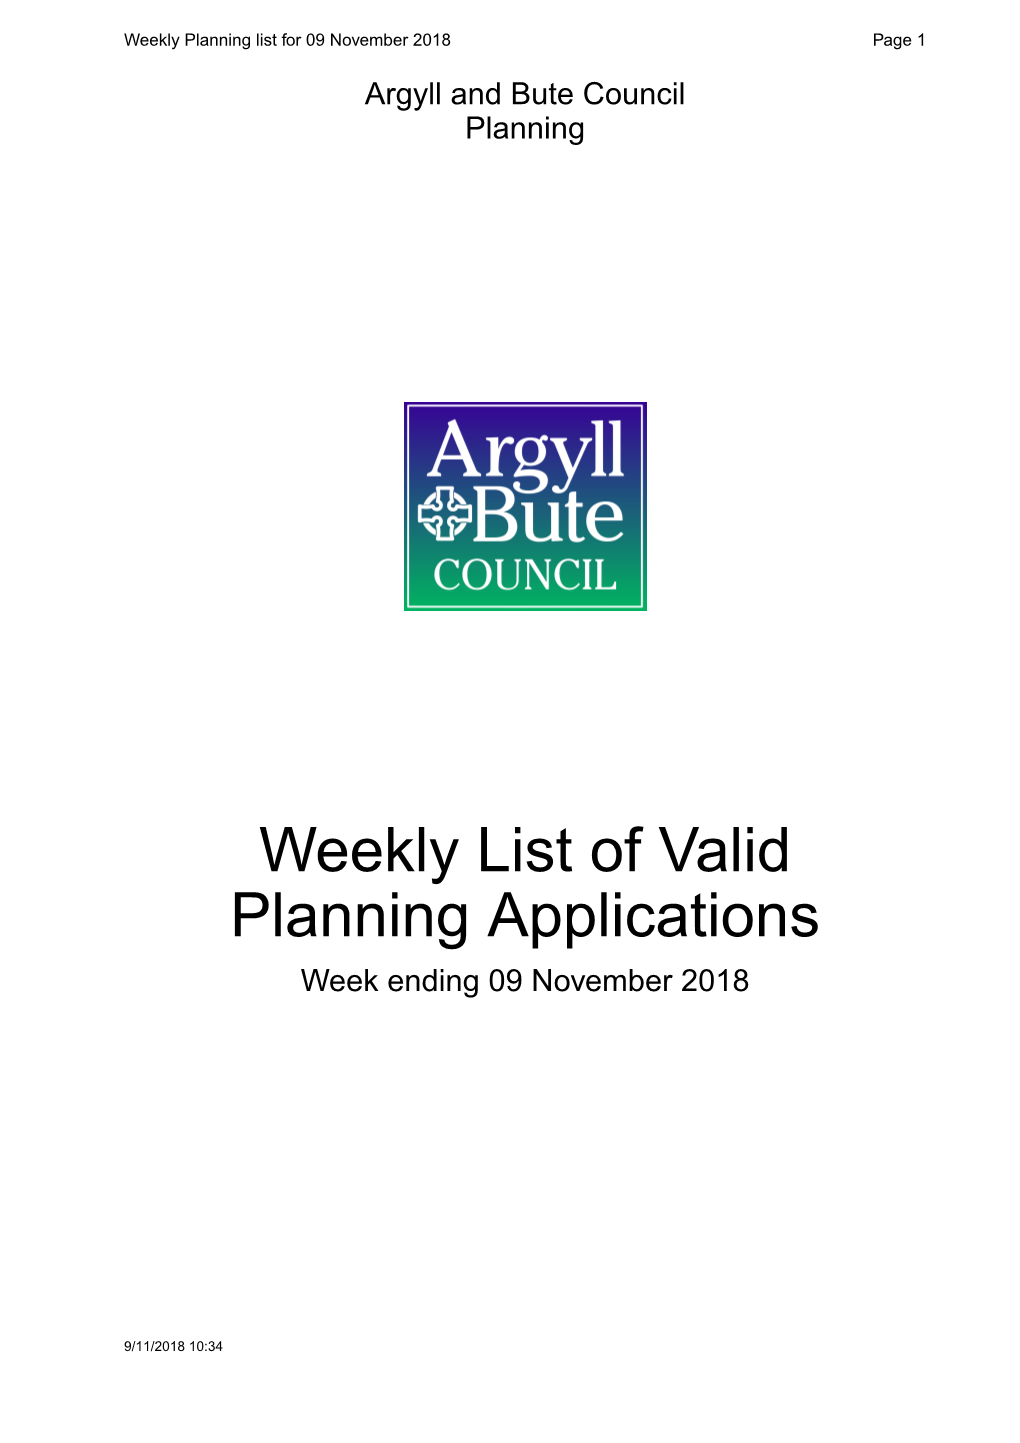 Weekly List of Valid Planning Applications Week Ending 09 November 2018